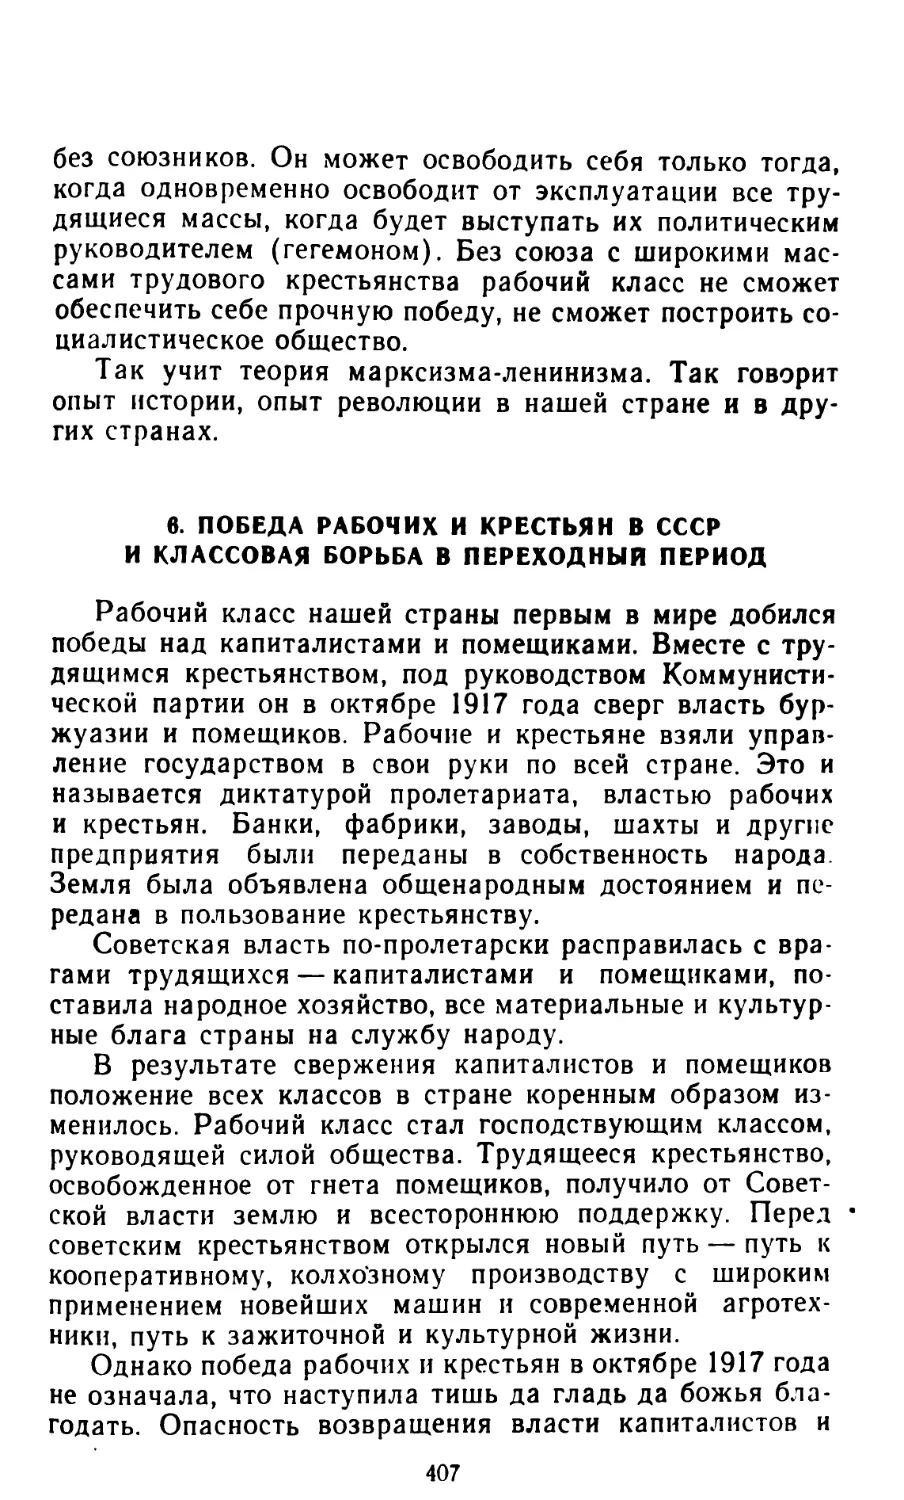 6. Победа рабочих и крестьян в СССР и классовая борьба в переходный период